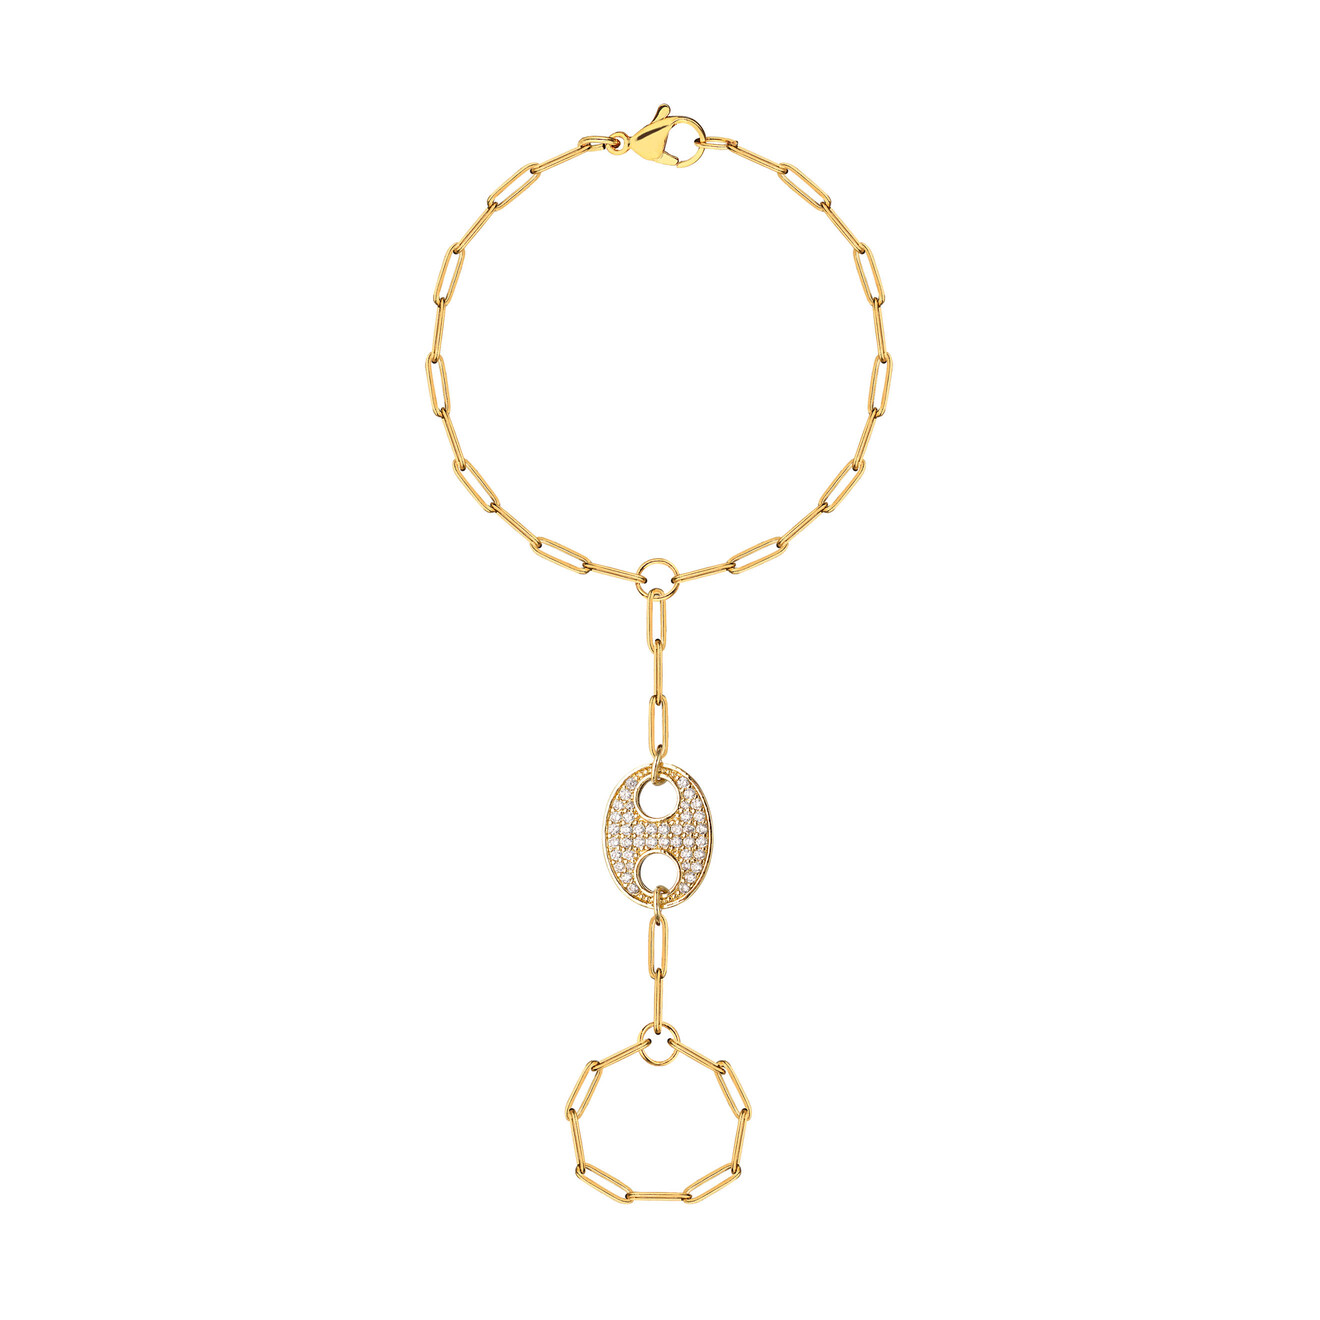 Maniovich AM Золотистый слейв-браслет со звеньями в виде кофейных зеренCoffee Bean Ring Bracelet alexander mcqueen золотистый браслет с жемчужинами chain pearl bracelet